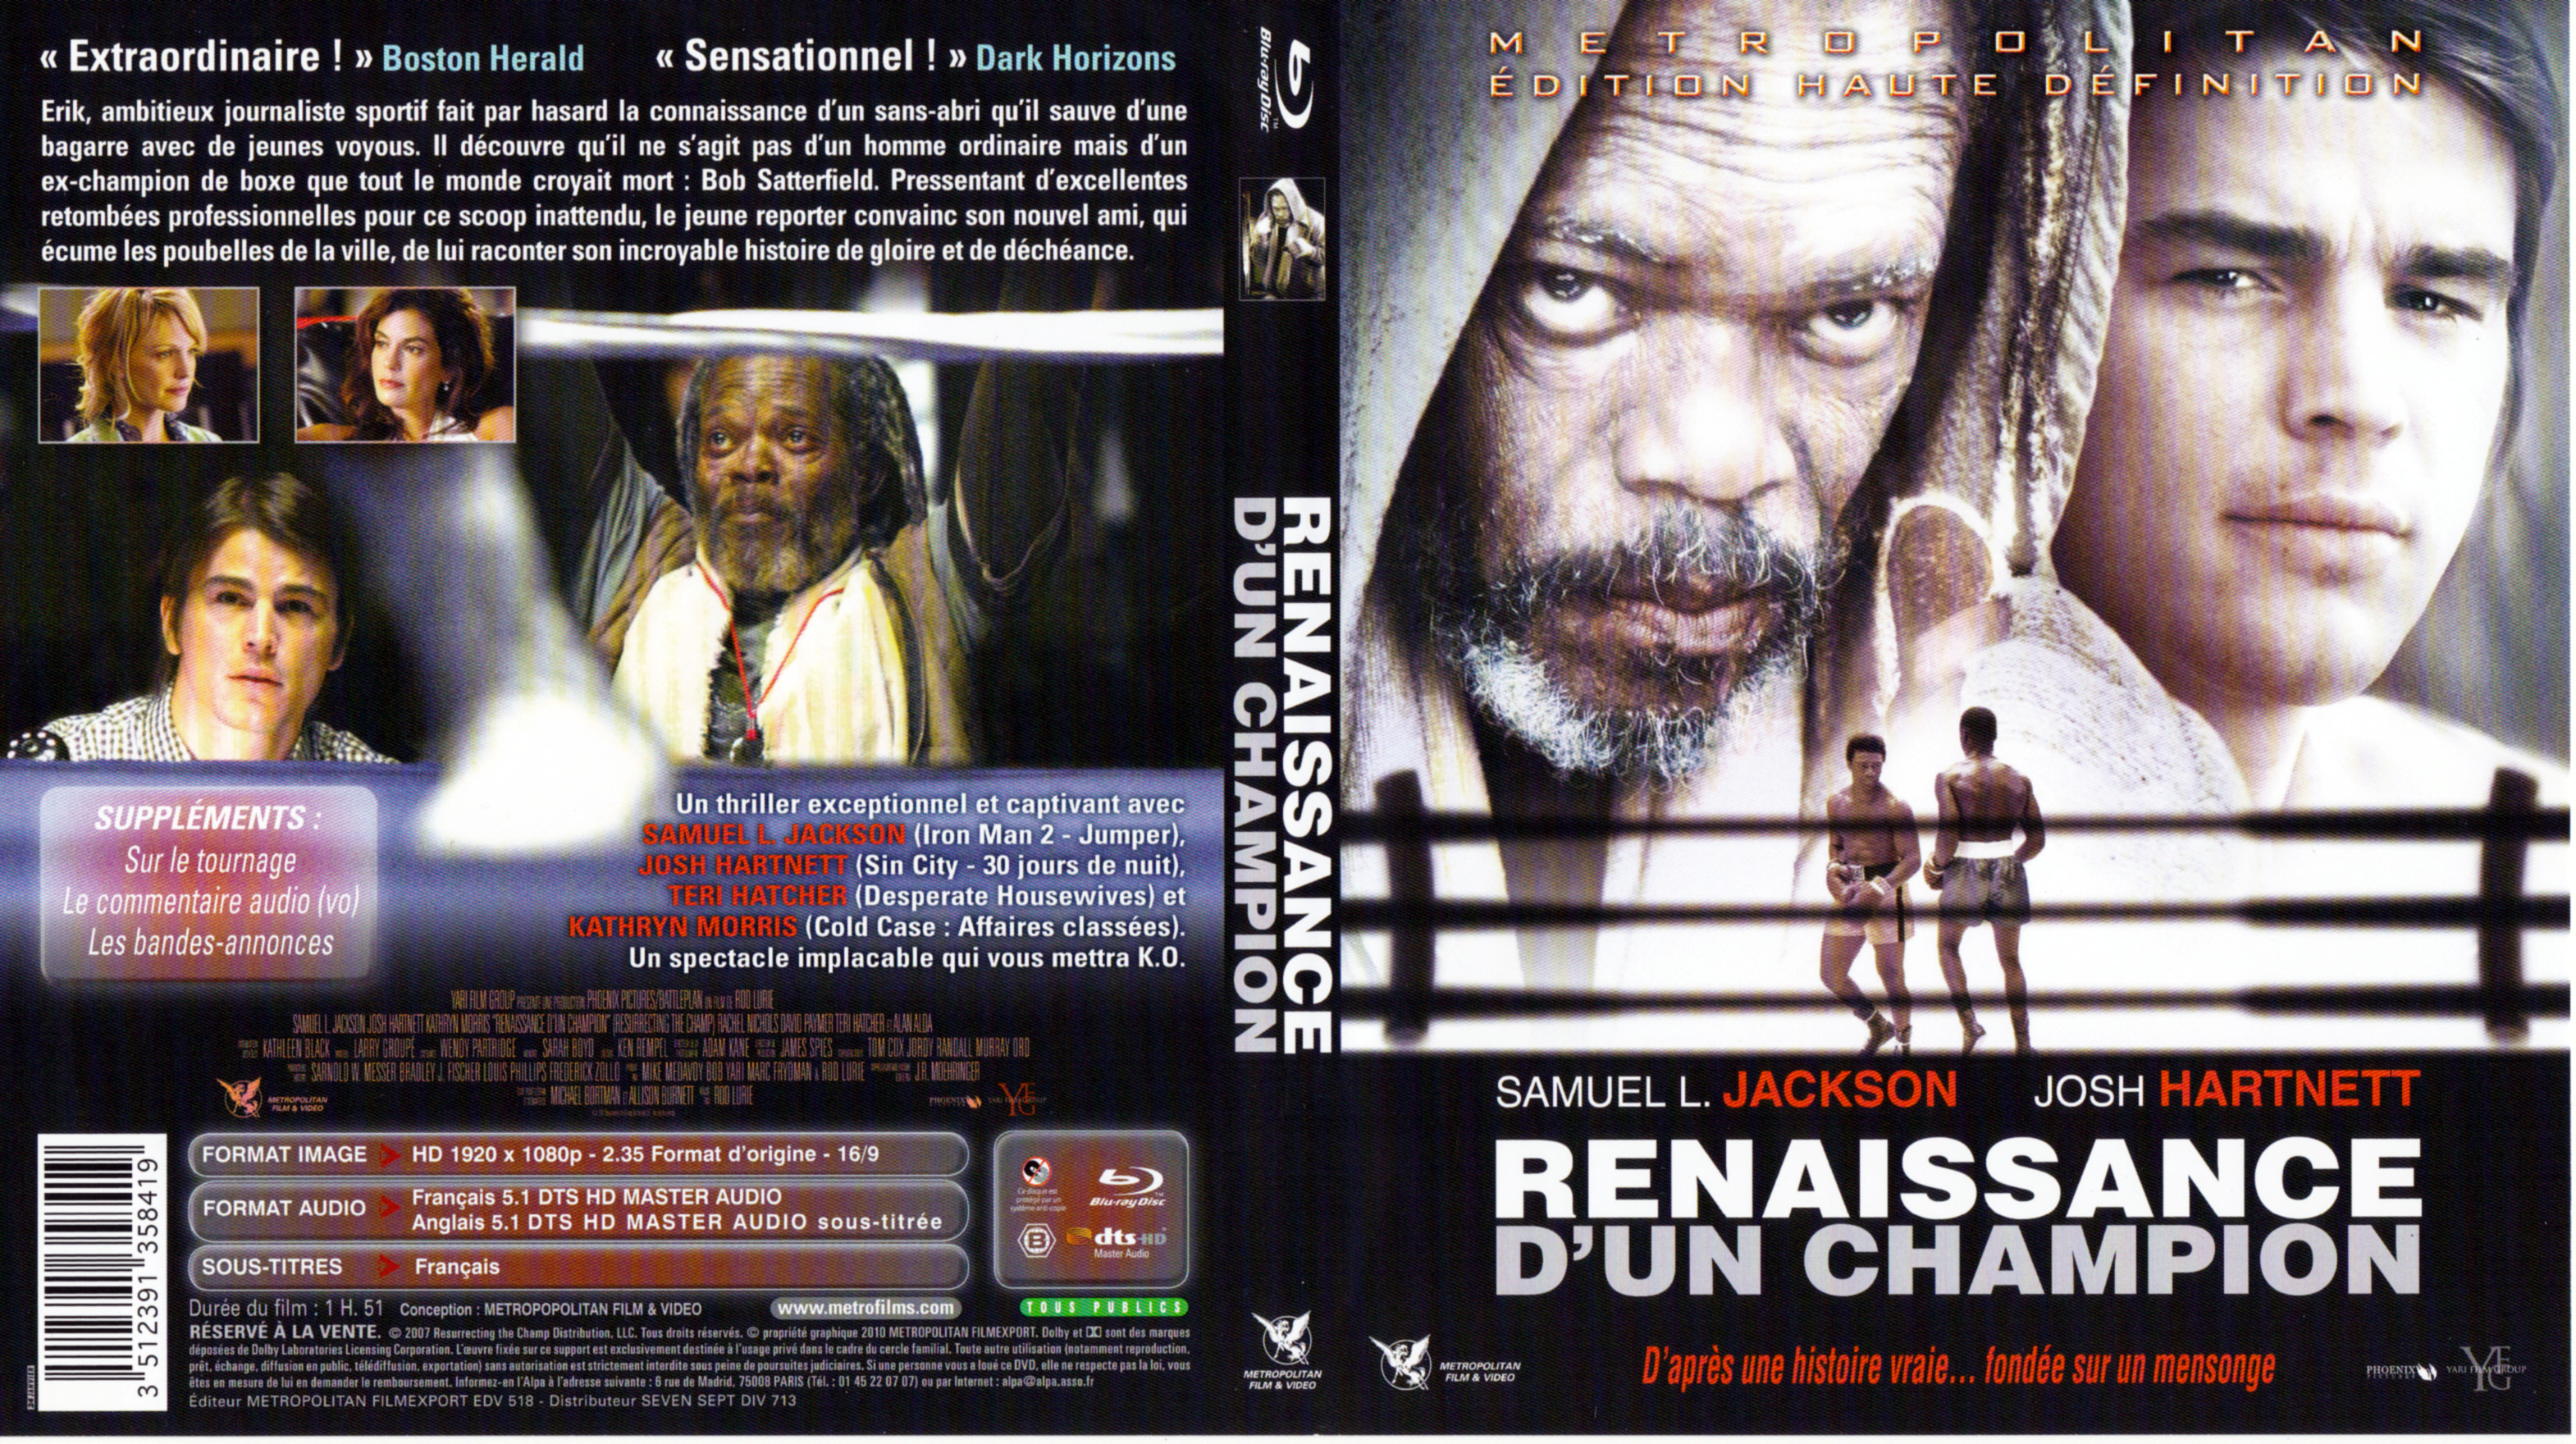 Jaquette DVD Renaissance d